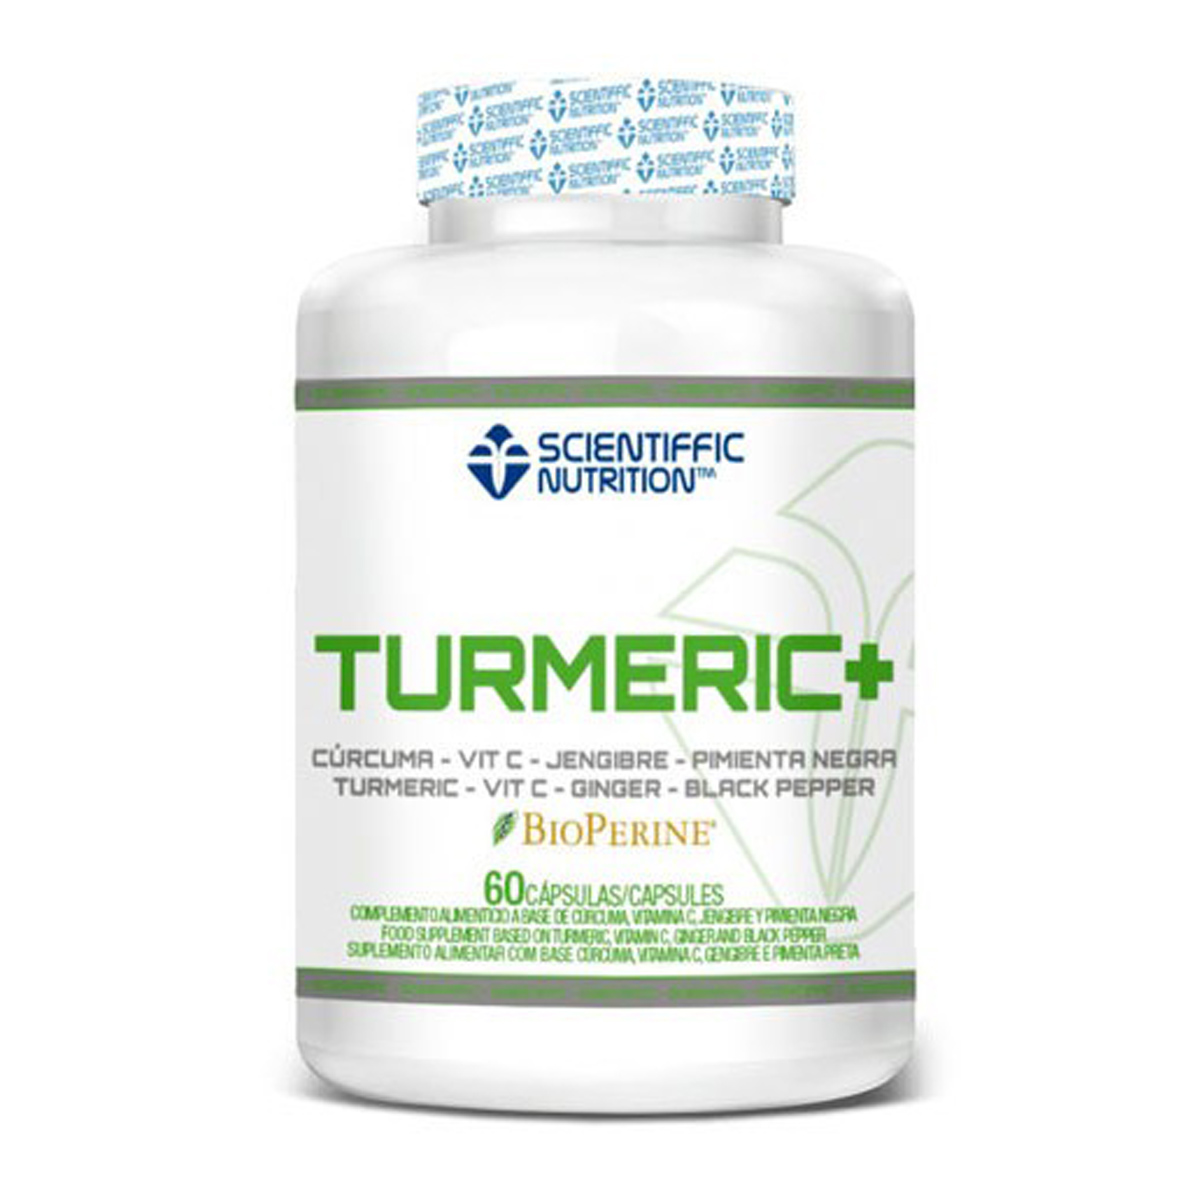 Curcuma Turmeric Scientiffic Nutrition 60capsulas Goldnutricion